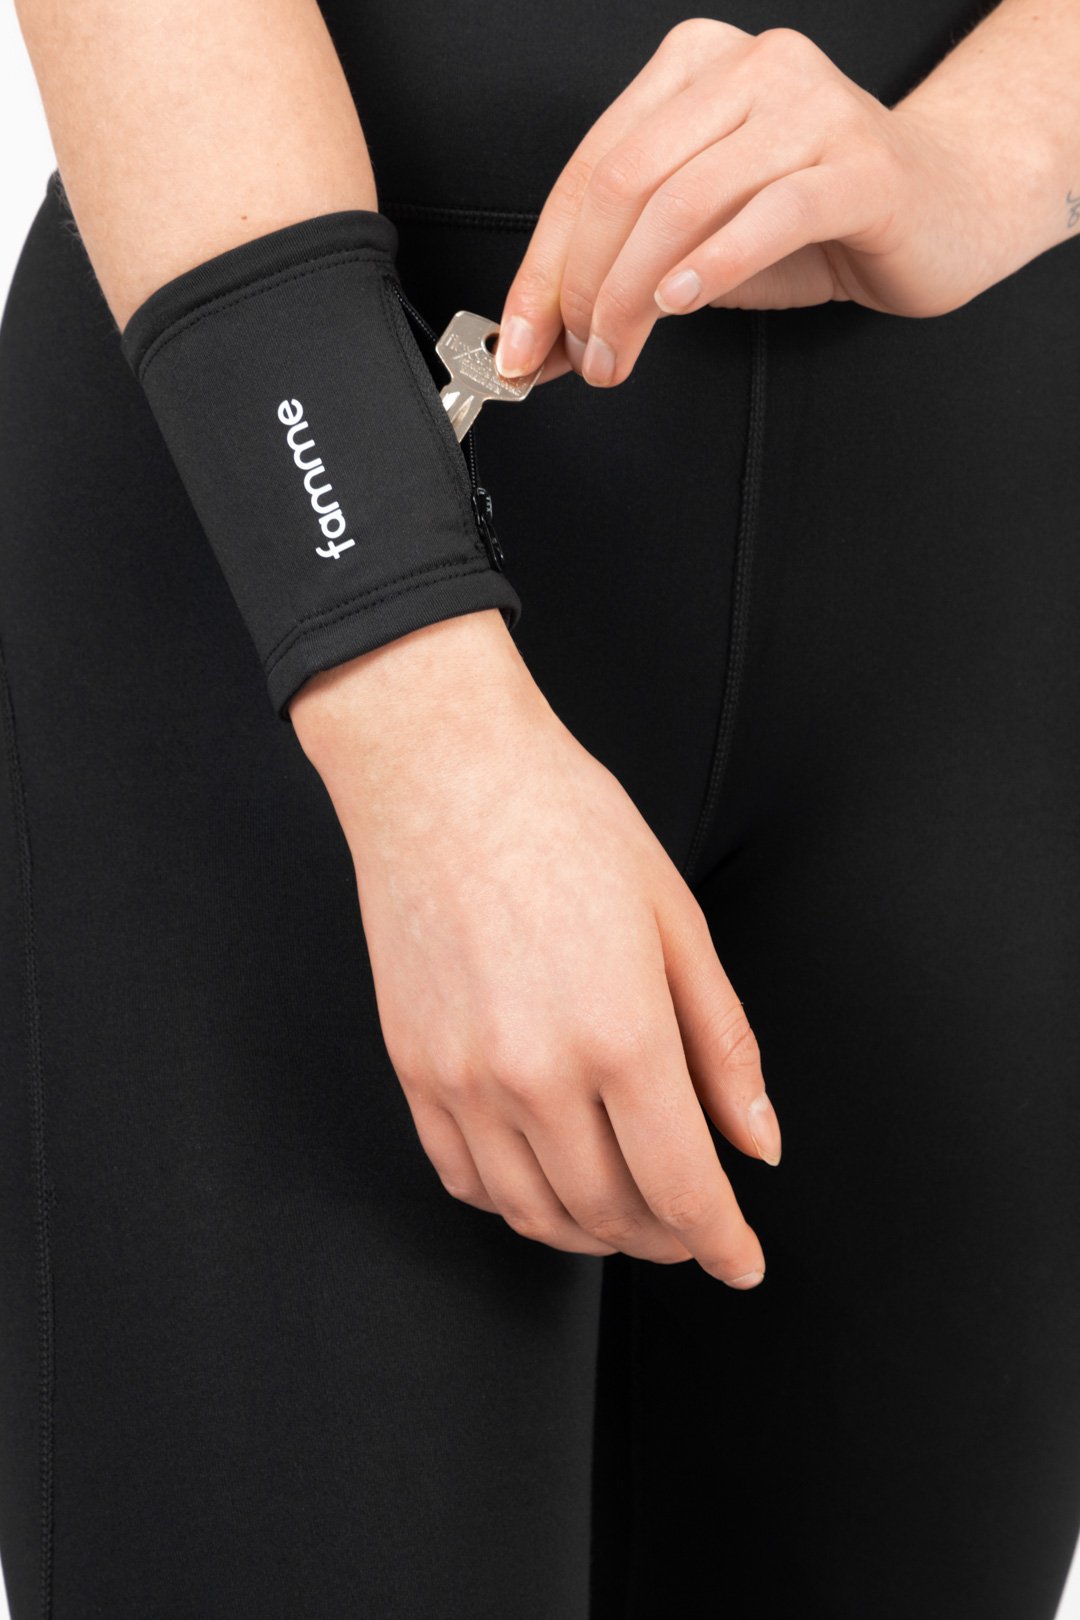 Armband mit praktischer Tasche zur Aufbewahrung von Schlüsseln